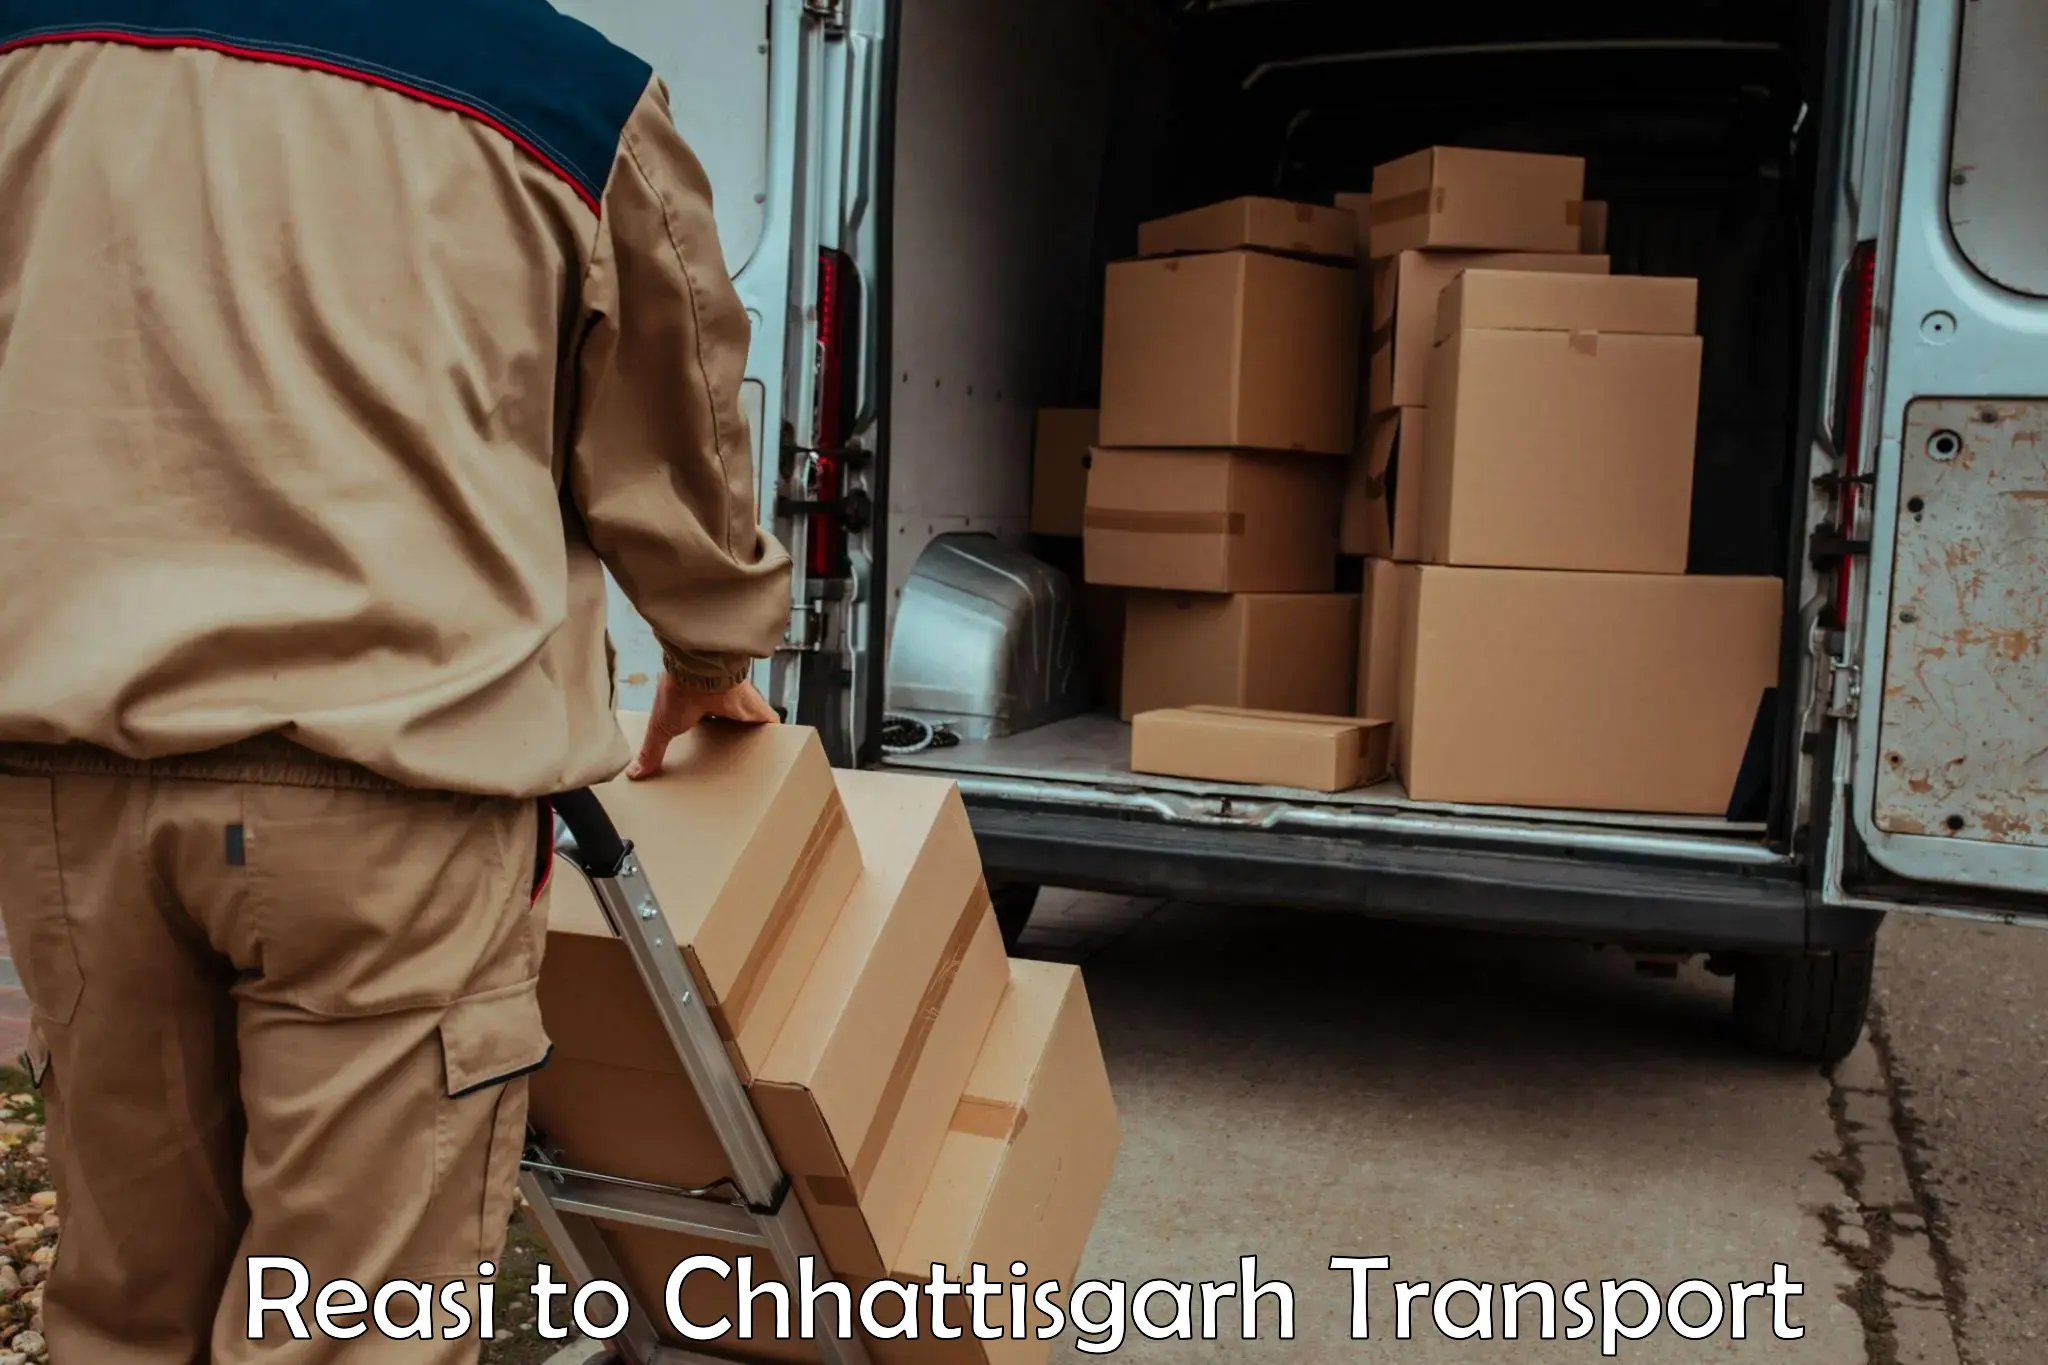 Furniture transport service Reasi to Dongargarh